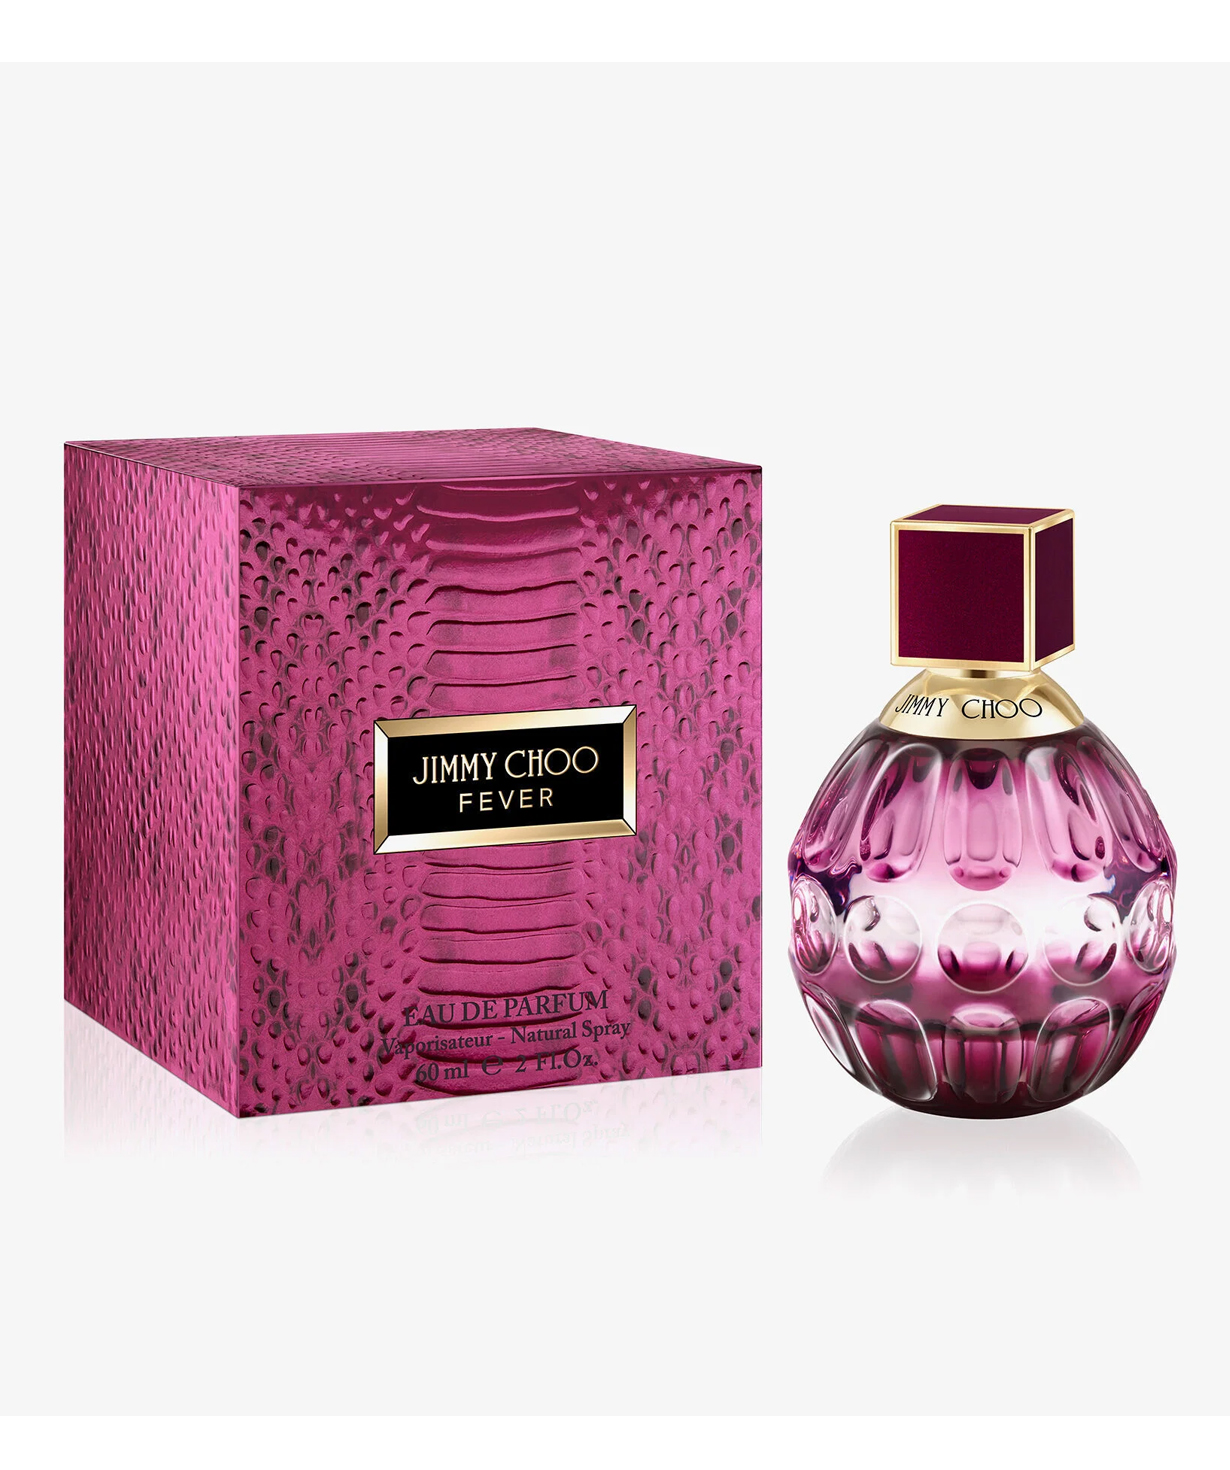 Perfume «Jimmy Choo» Fever, for women, 60 ml